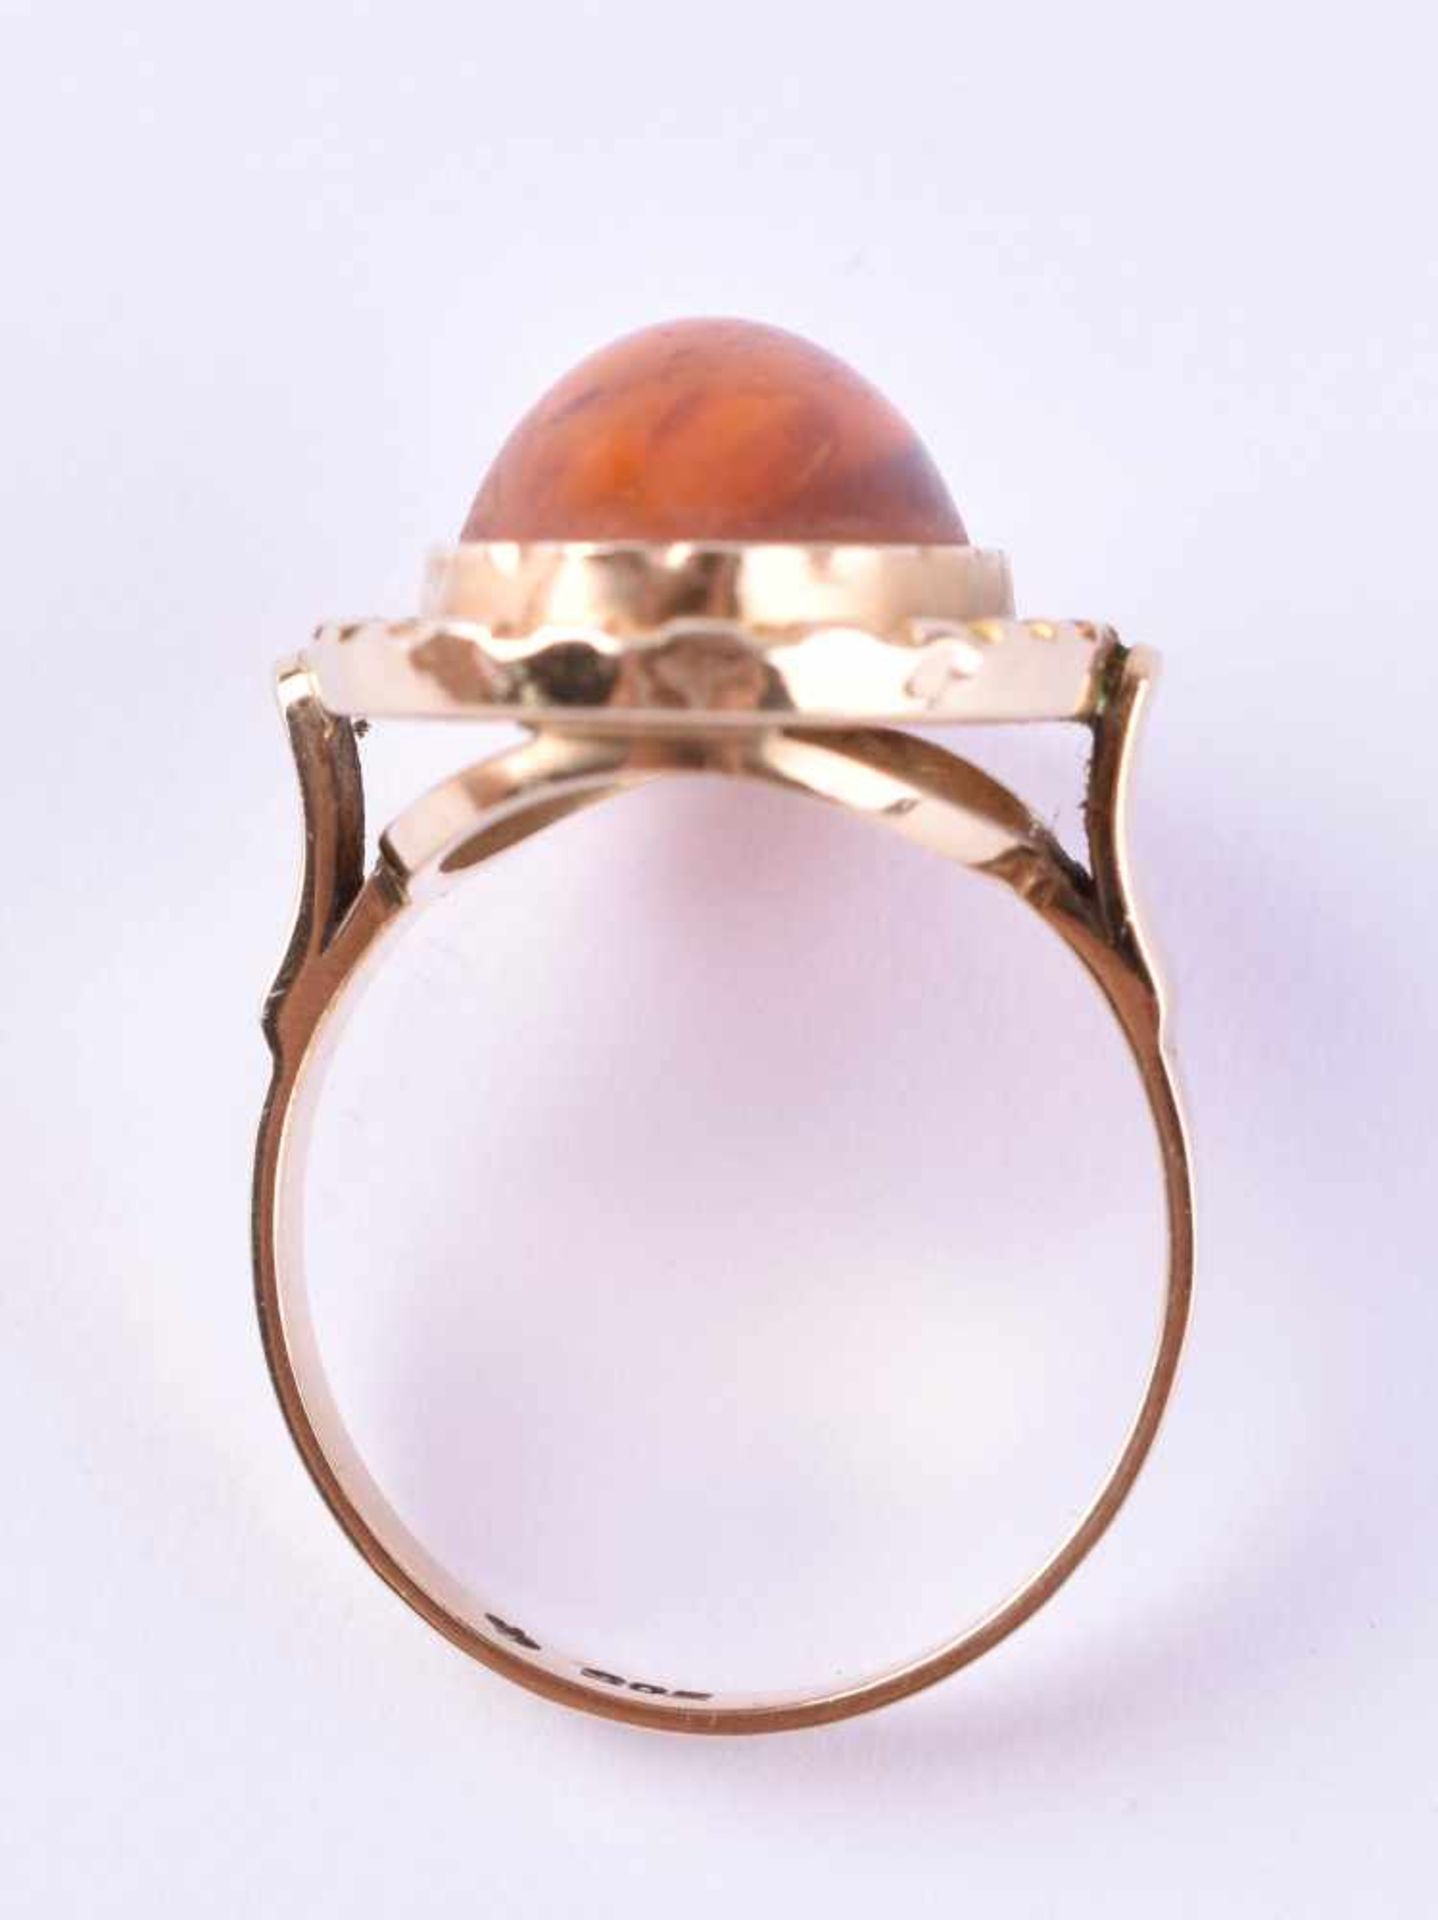 Bernstein Ring um 1950/70GG 585/000, RG ca. 60, Gesamtgewicht ca. 4 gAmber ring around 1950/70yellow - Bild 4 aus 5